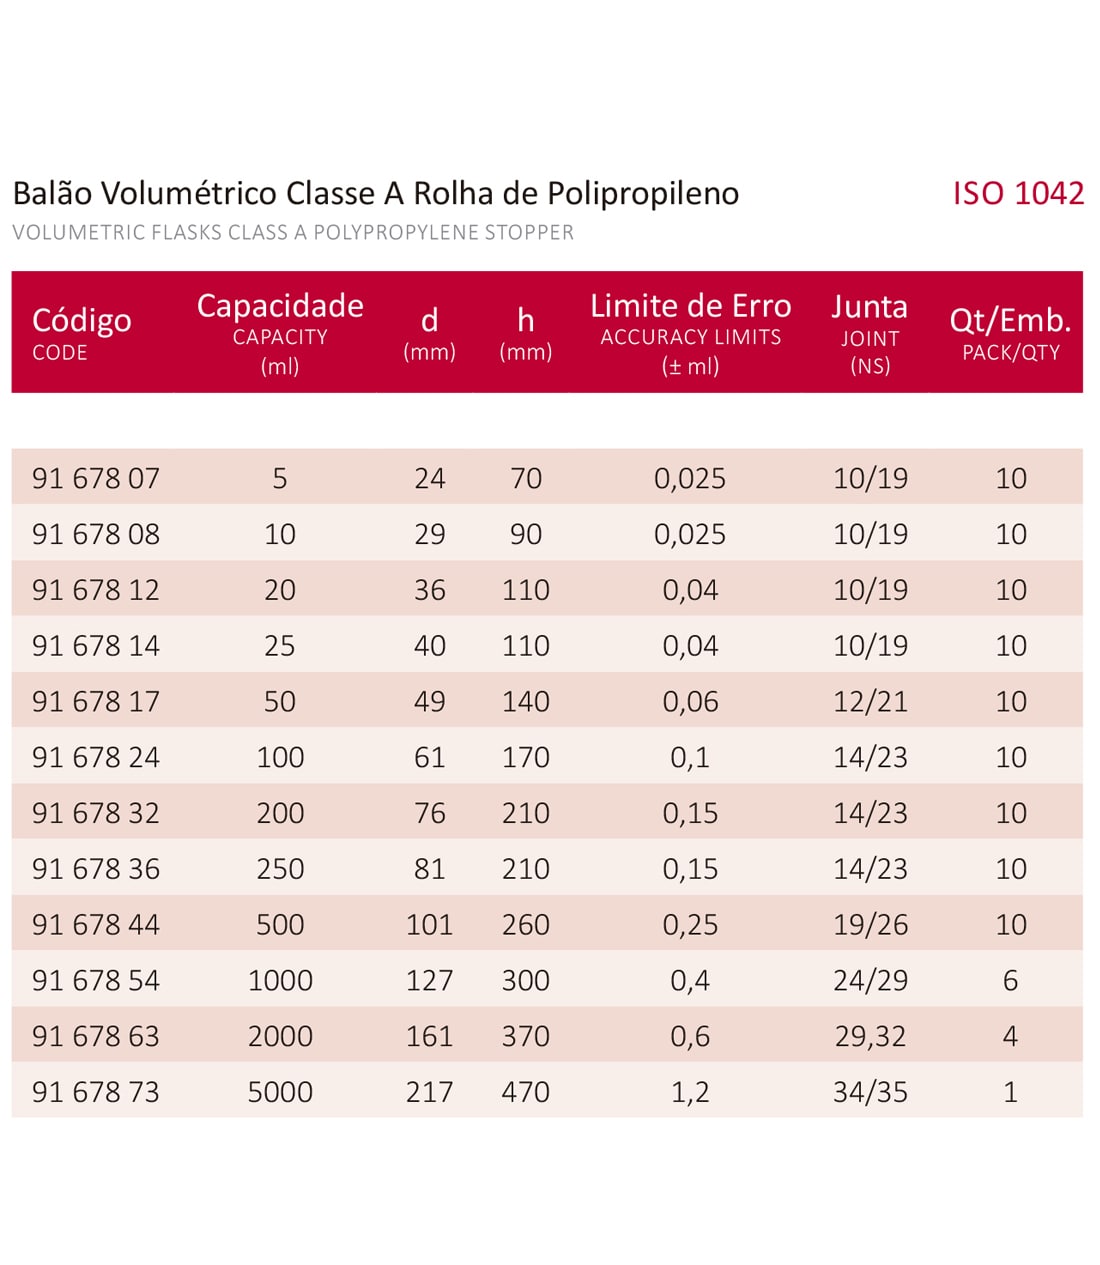 BALÃO VOLUMÉTRICO CLASSE A ROLHA POLI C/ CERTIFICADO RASTREÁVEL 2,5 ML - Marca Laborglas - Cód. 9167803-C